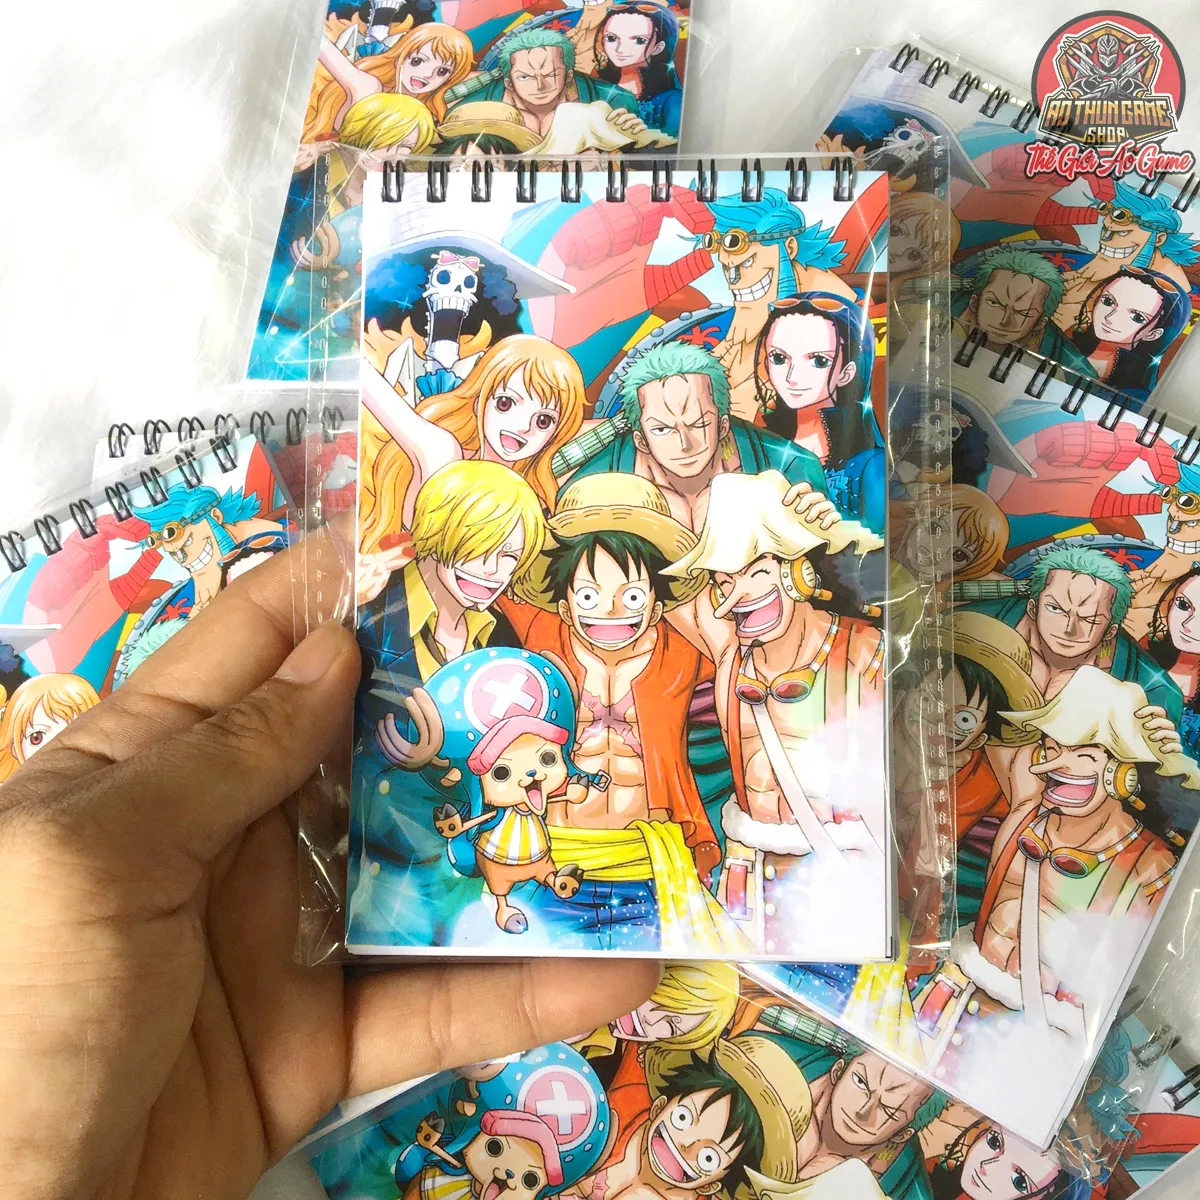 Hãy khám phá thế giới One Piece bên cạnh nhóm Luffy, những người hùng vĩ đại đầy mạo hiểm và tình bạn. Đón xem hành trình ly kỳ để tìm kiếm kho báu One Piece và chinh phục đại dương.